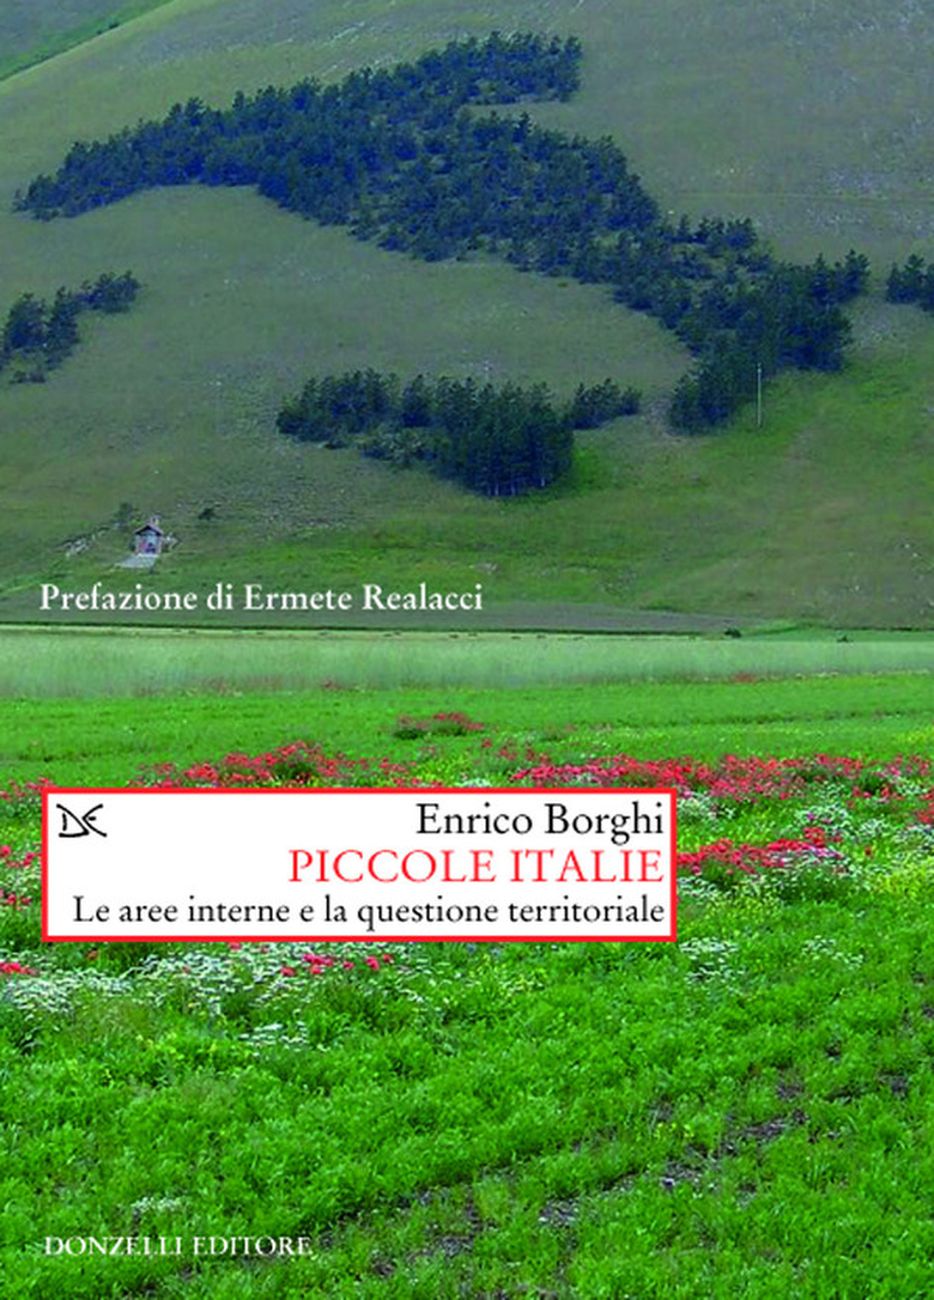 Enrico Borghi ‒ Piccole Italie (Donzelli Editore, Roma 2017)